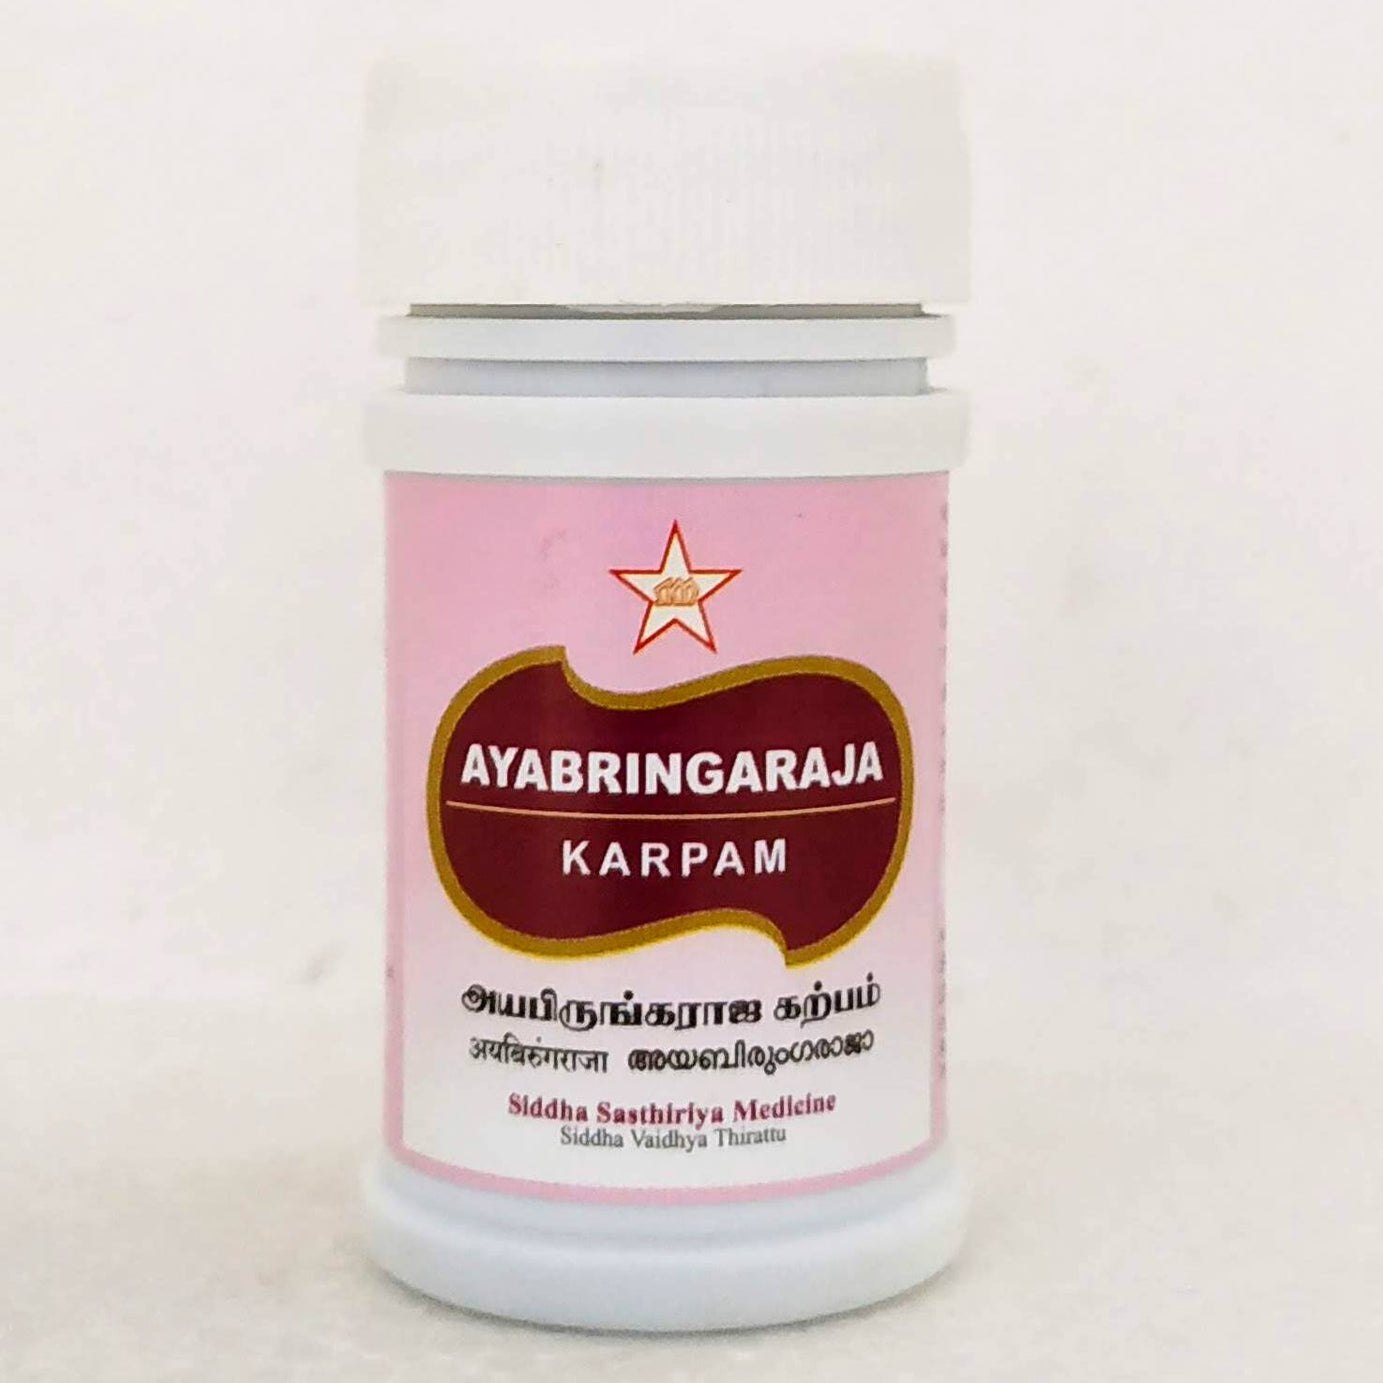 Shop Ayabringaraja karpam 10gm at price 42.00 from SKM Online - Ayush Care